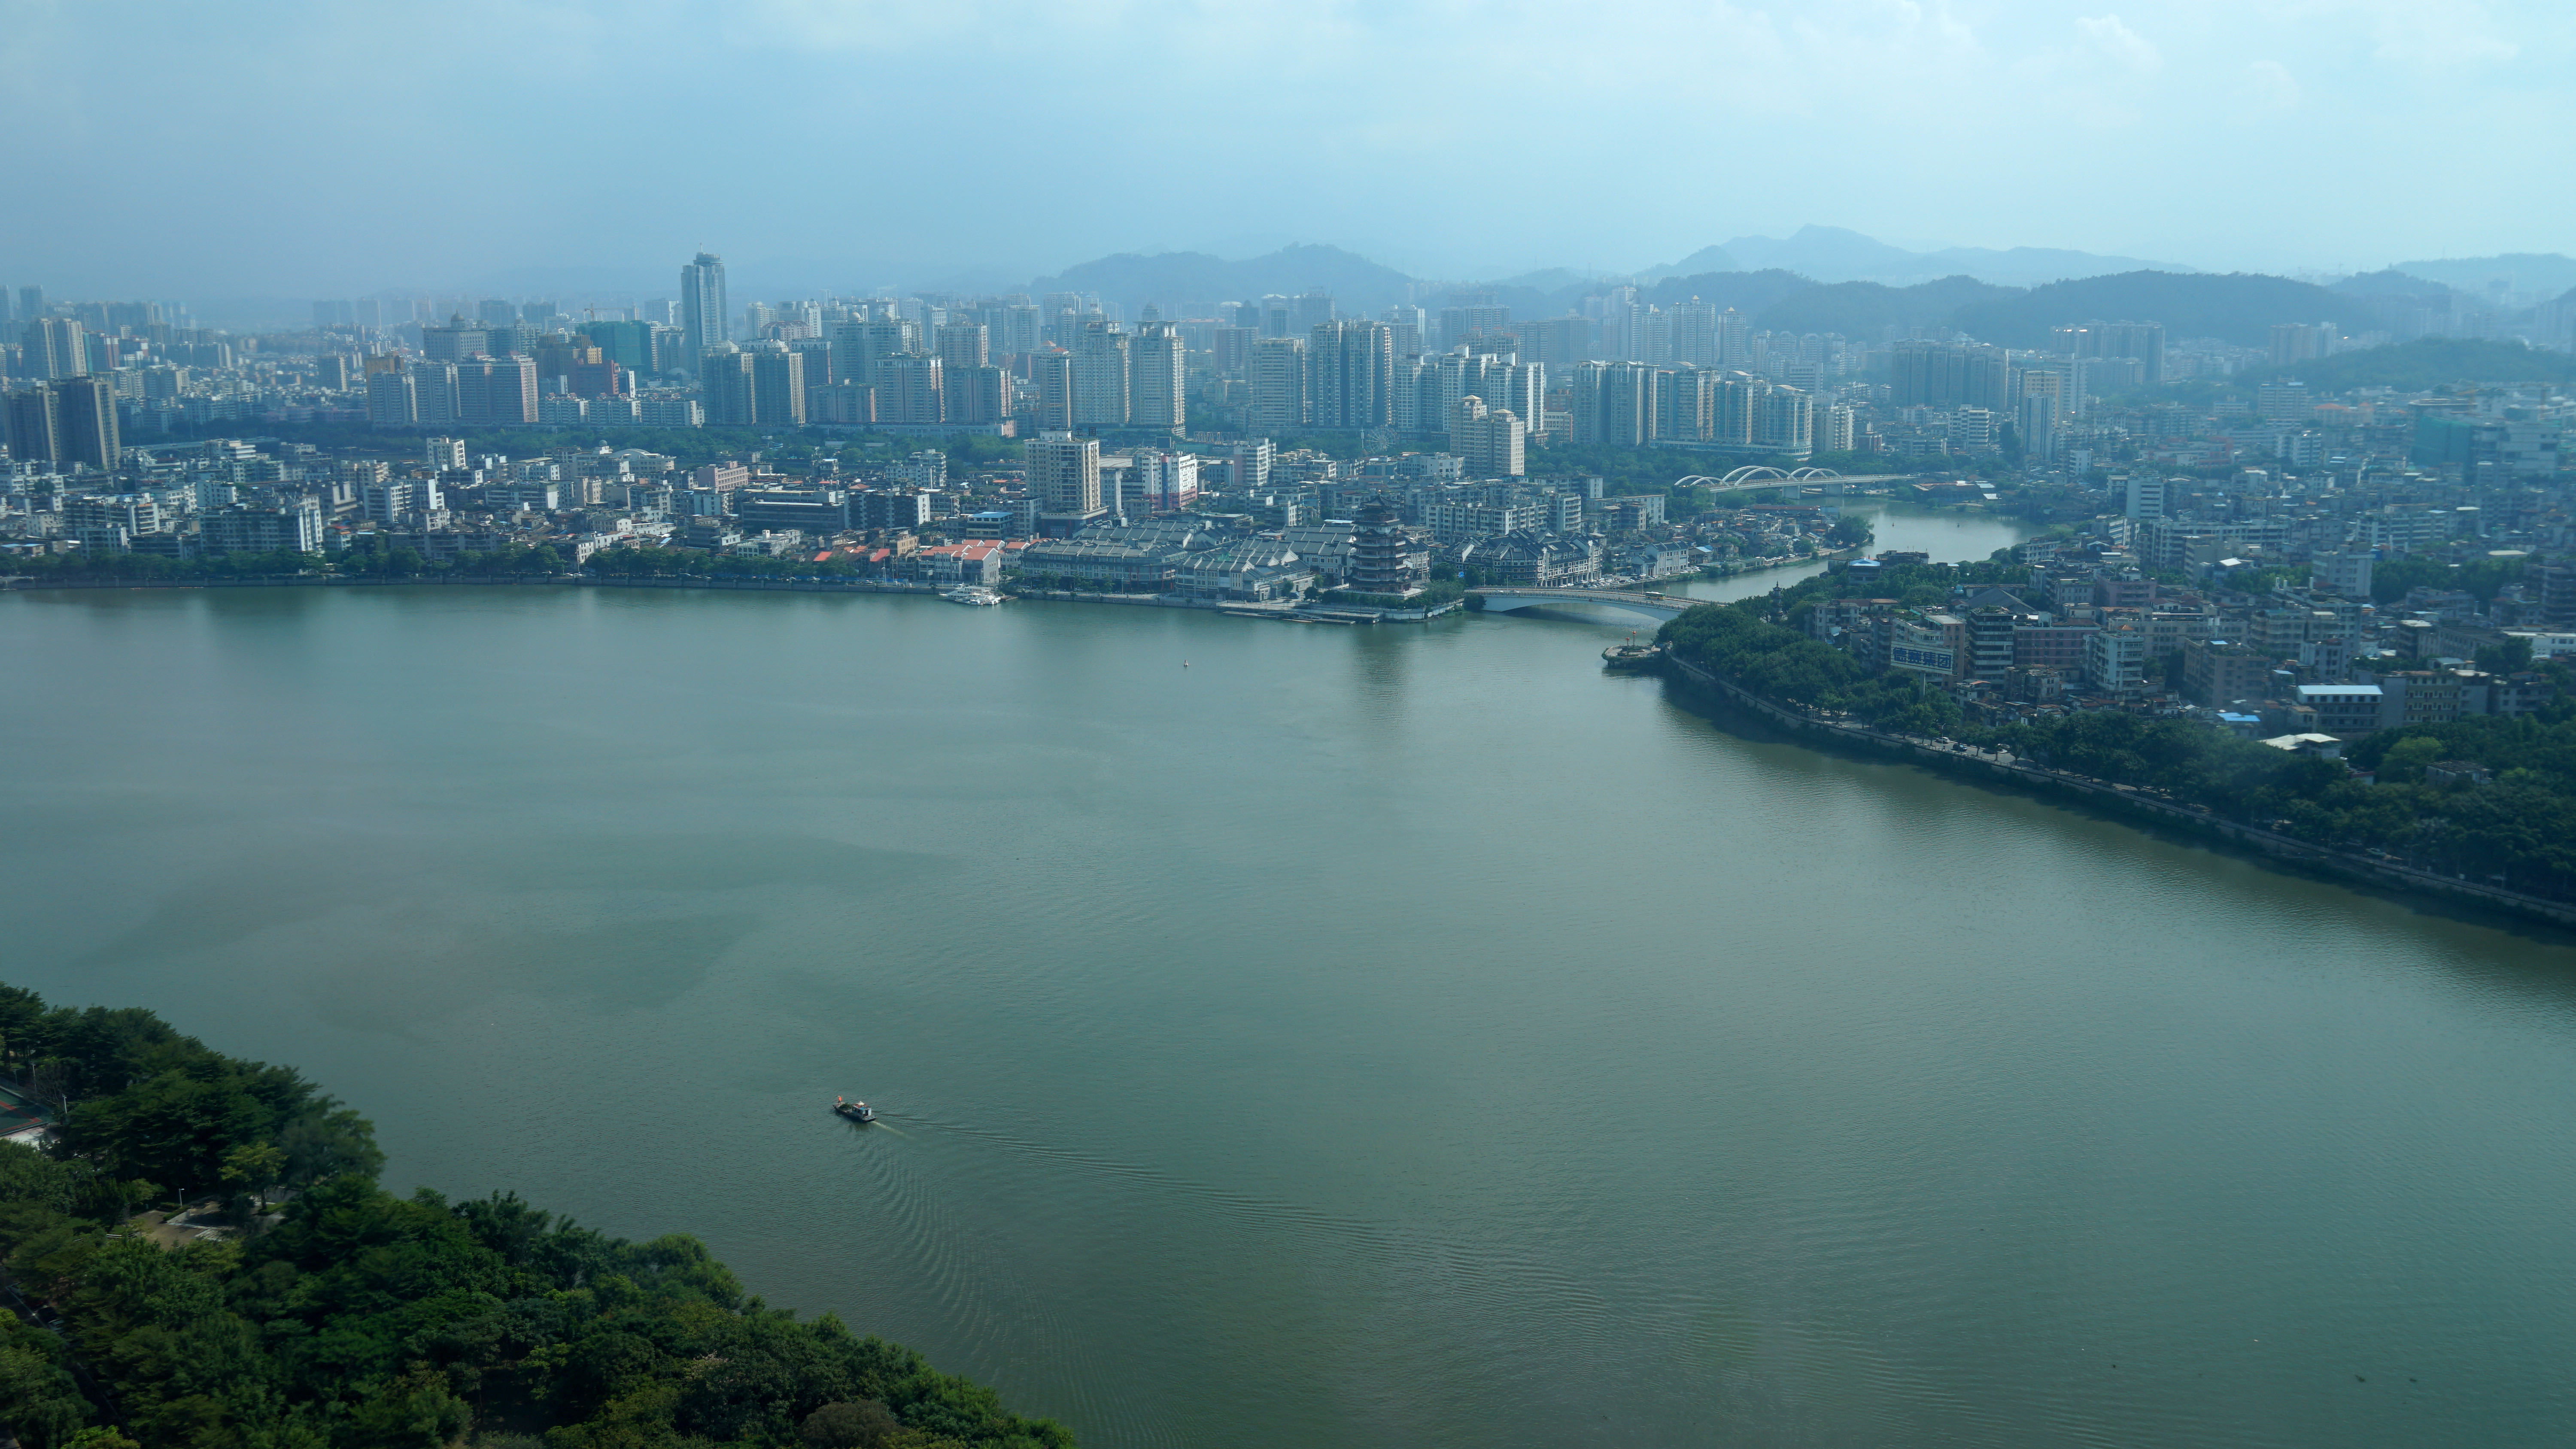 东江是广东首个实施水资源分配的江河，通过实施水资源分配节水成效显著。图为碧波荡漾的东江惠州段。邹锦华 摄